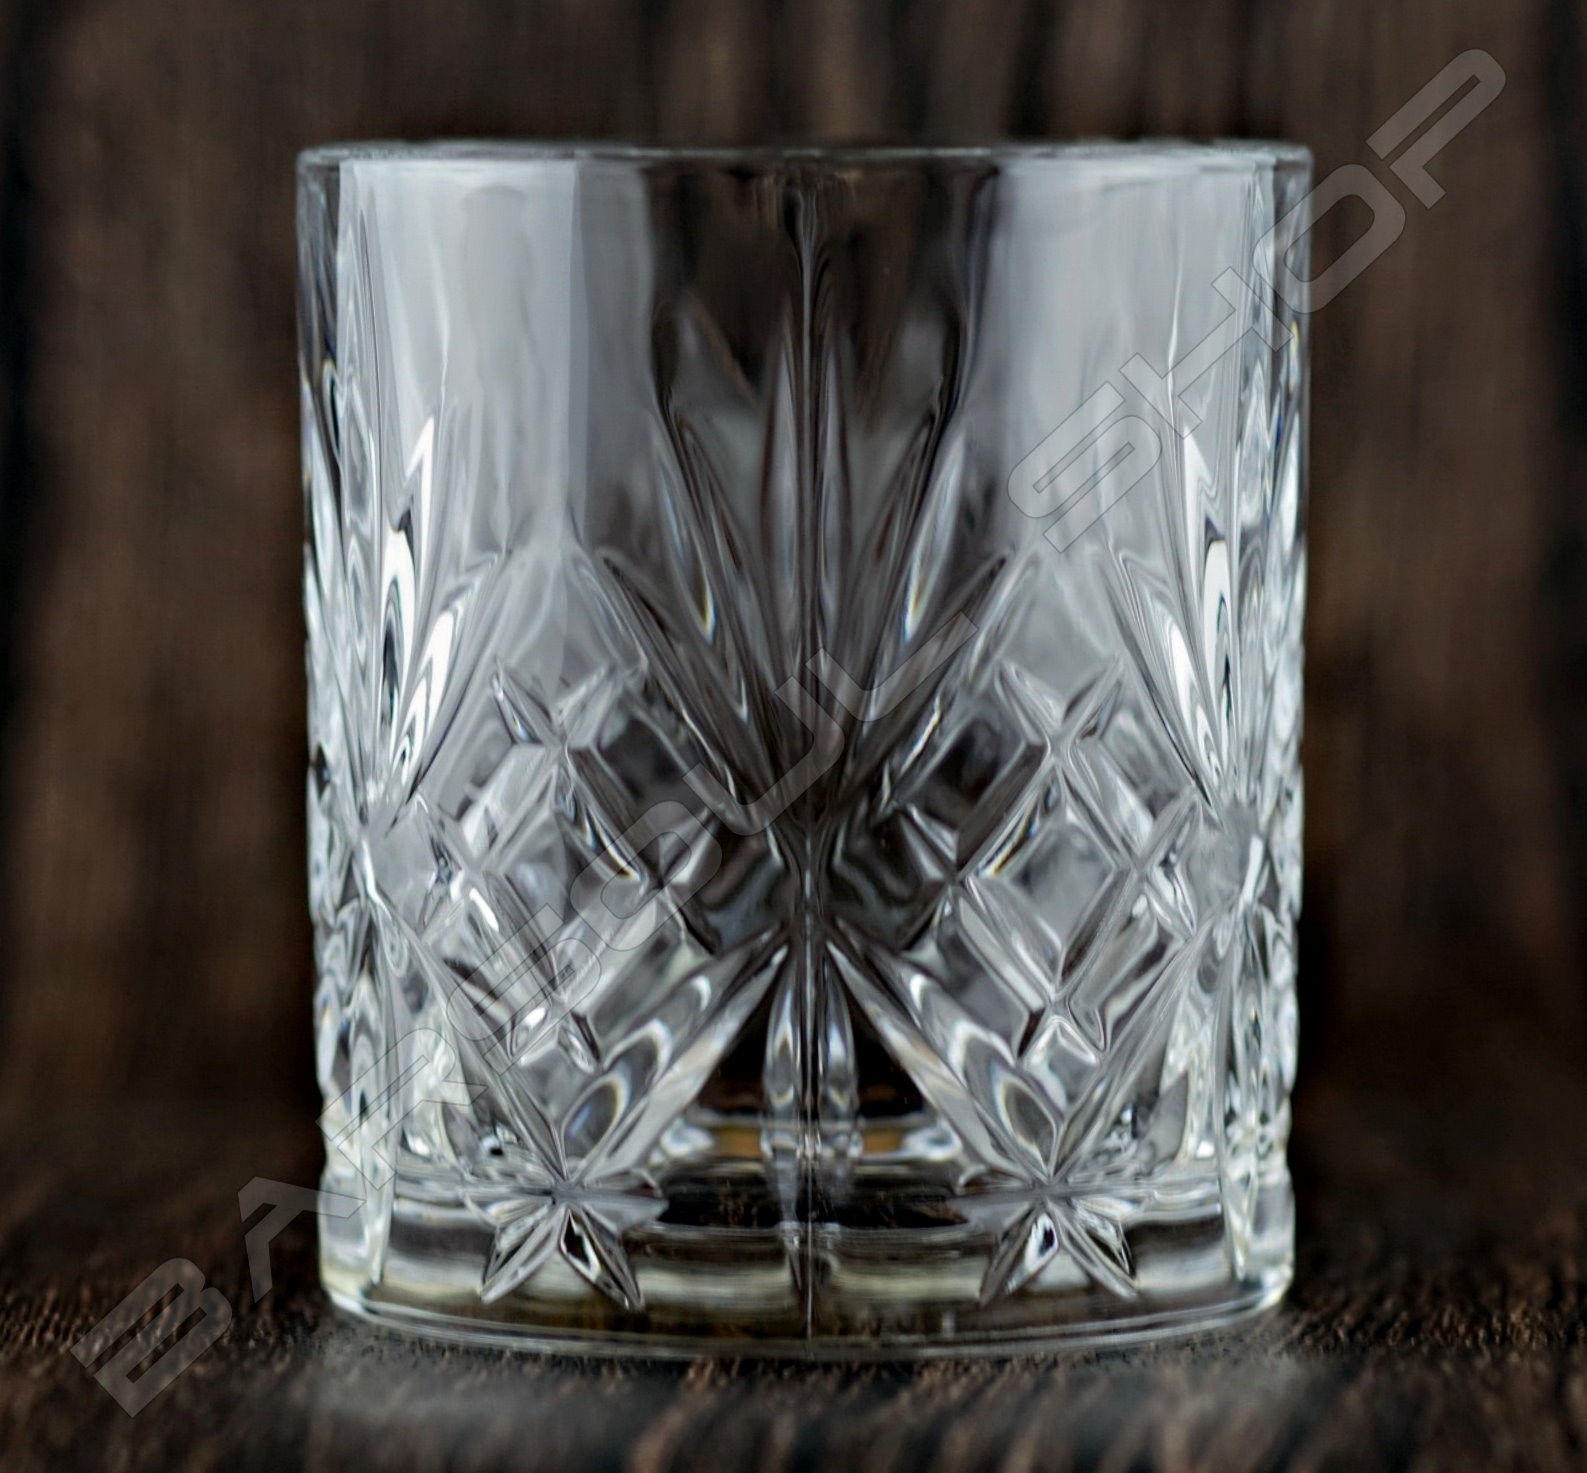 【預購】義大利手工威士忌杯300ml 6pcs Italy RCR whisky Tumbler